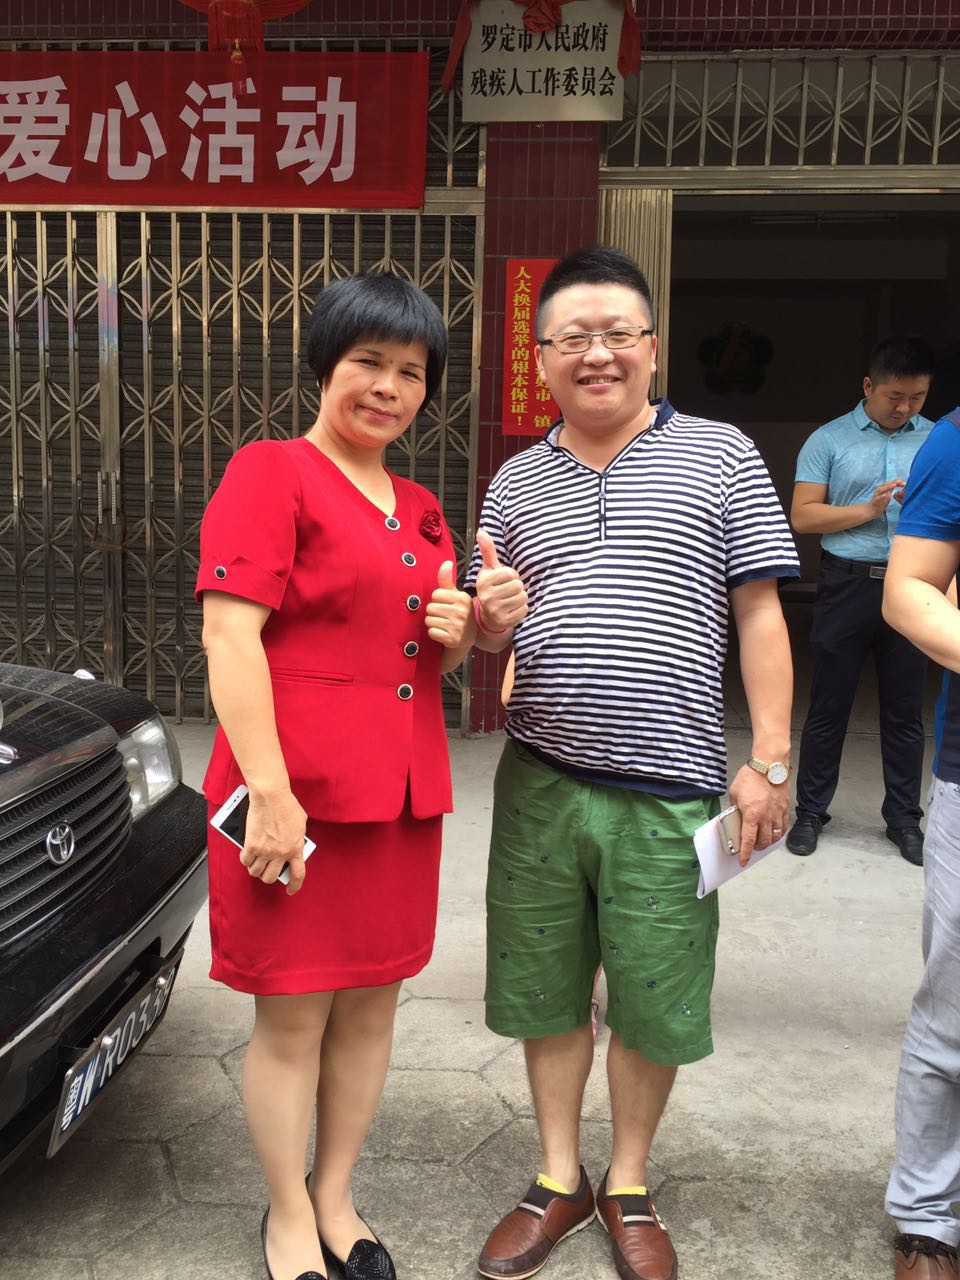 罗定市残疾人联合会吴理事长(左)和漆强漆化工总经理张文(右)